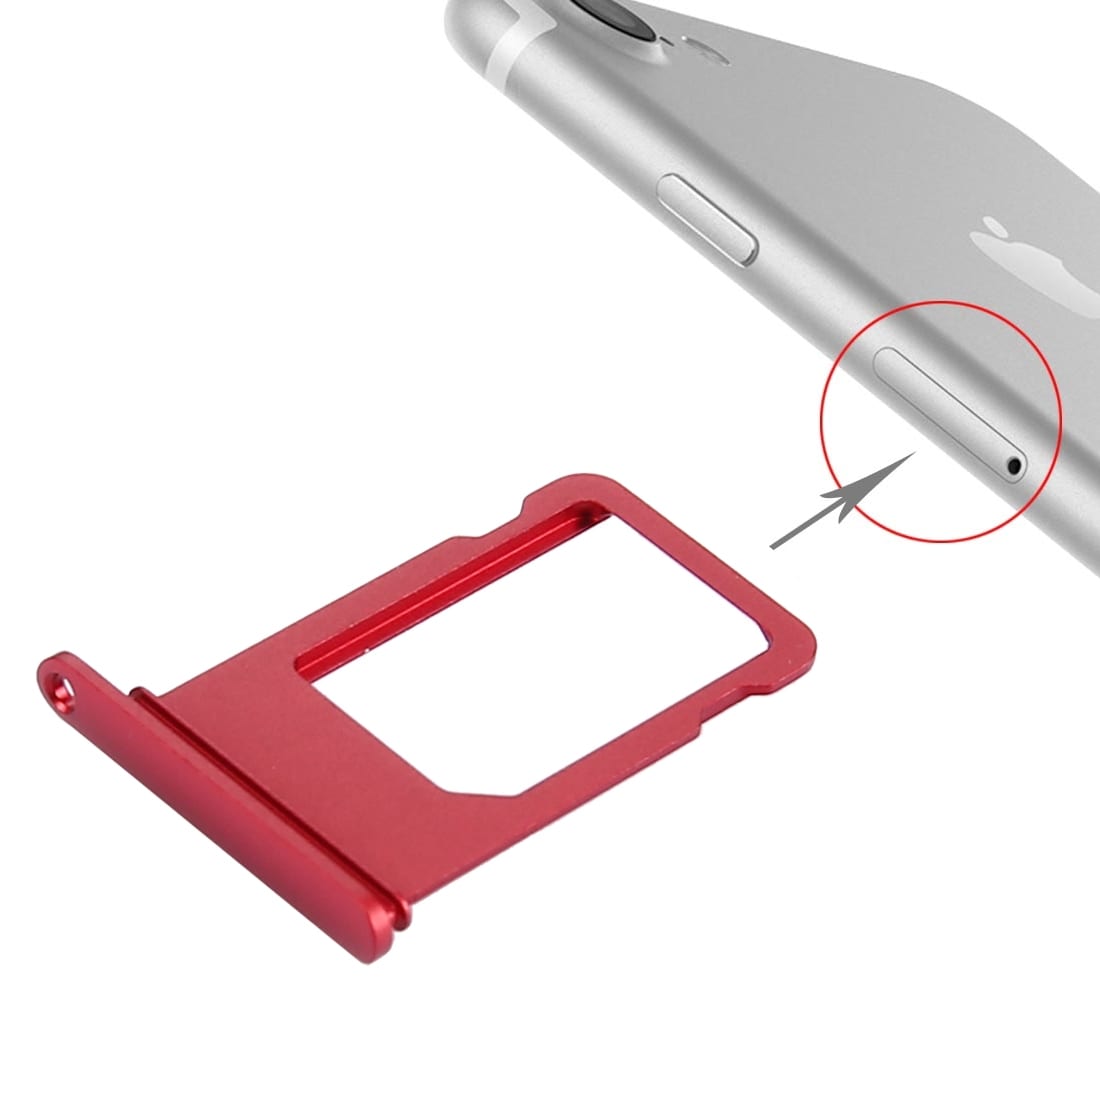 Simkortshållare för iPhone 7 – röd